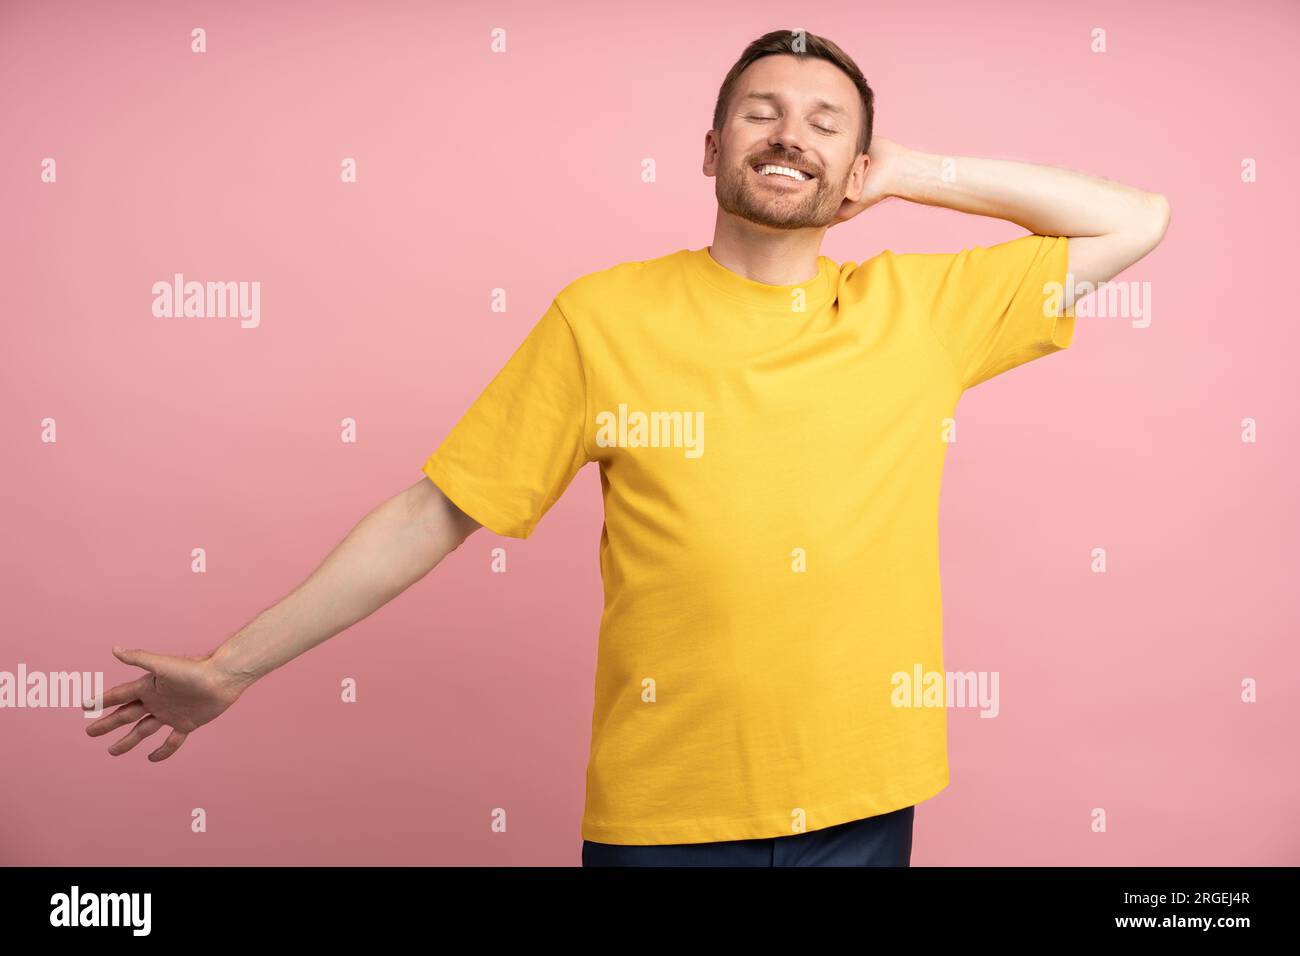 Uomo sorridente spensierato con occhi chiusi e braccio allungato al mattino, parete rosa studio Foto Stock